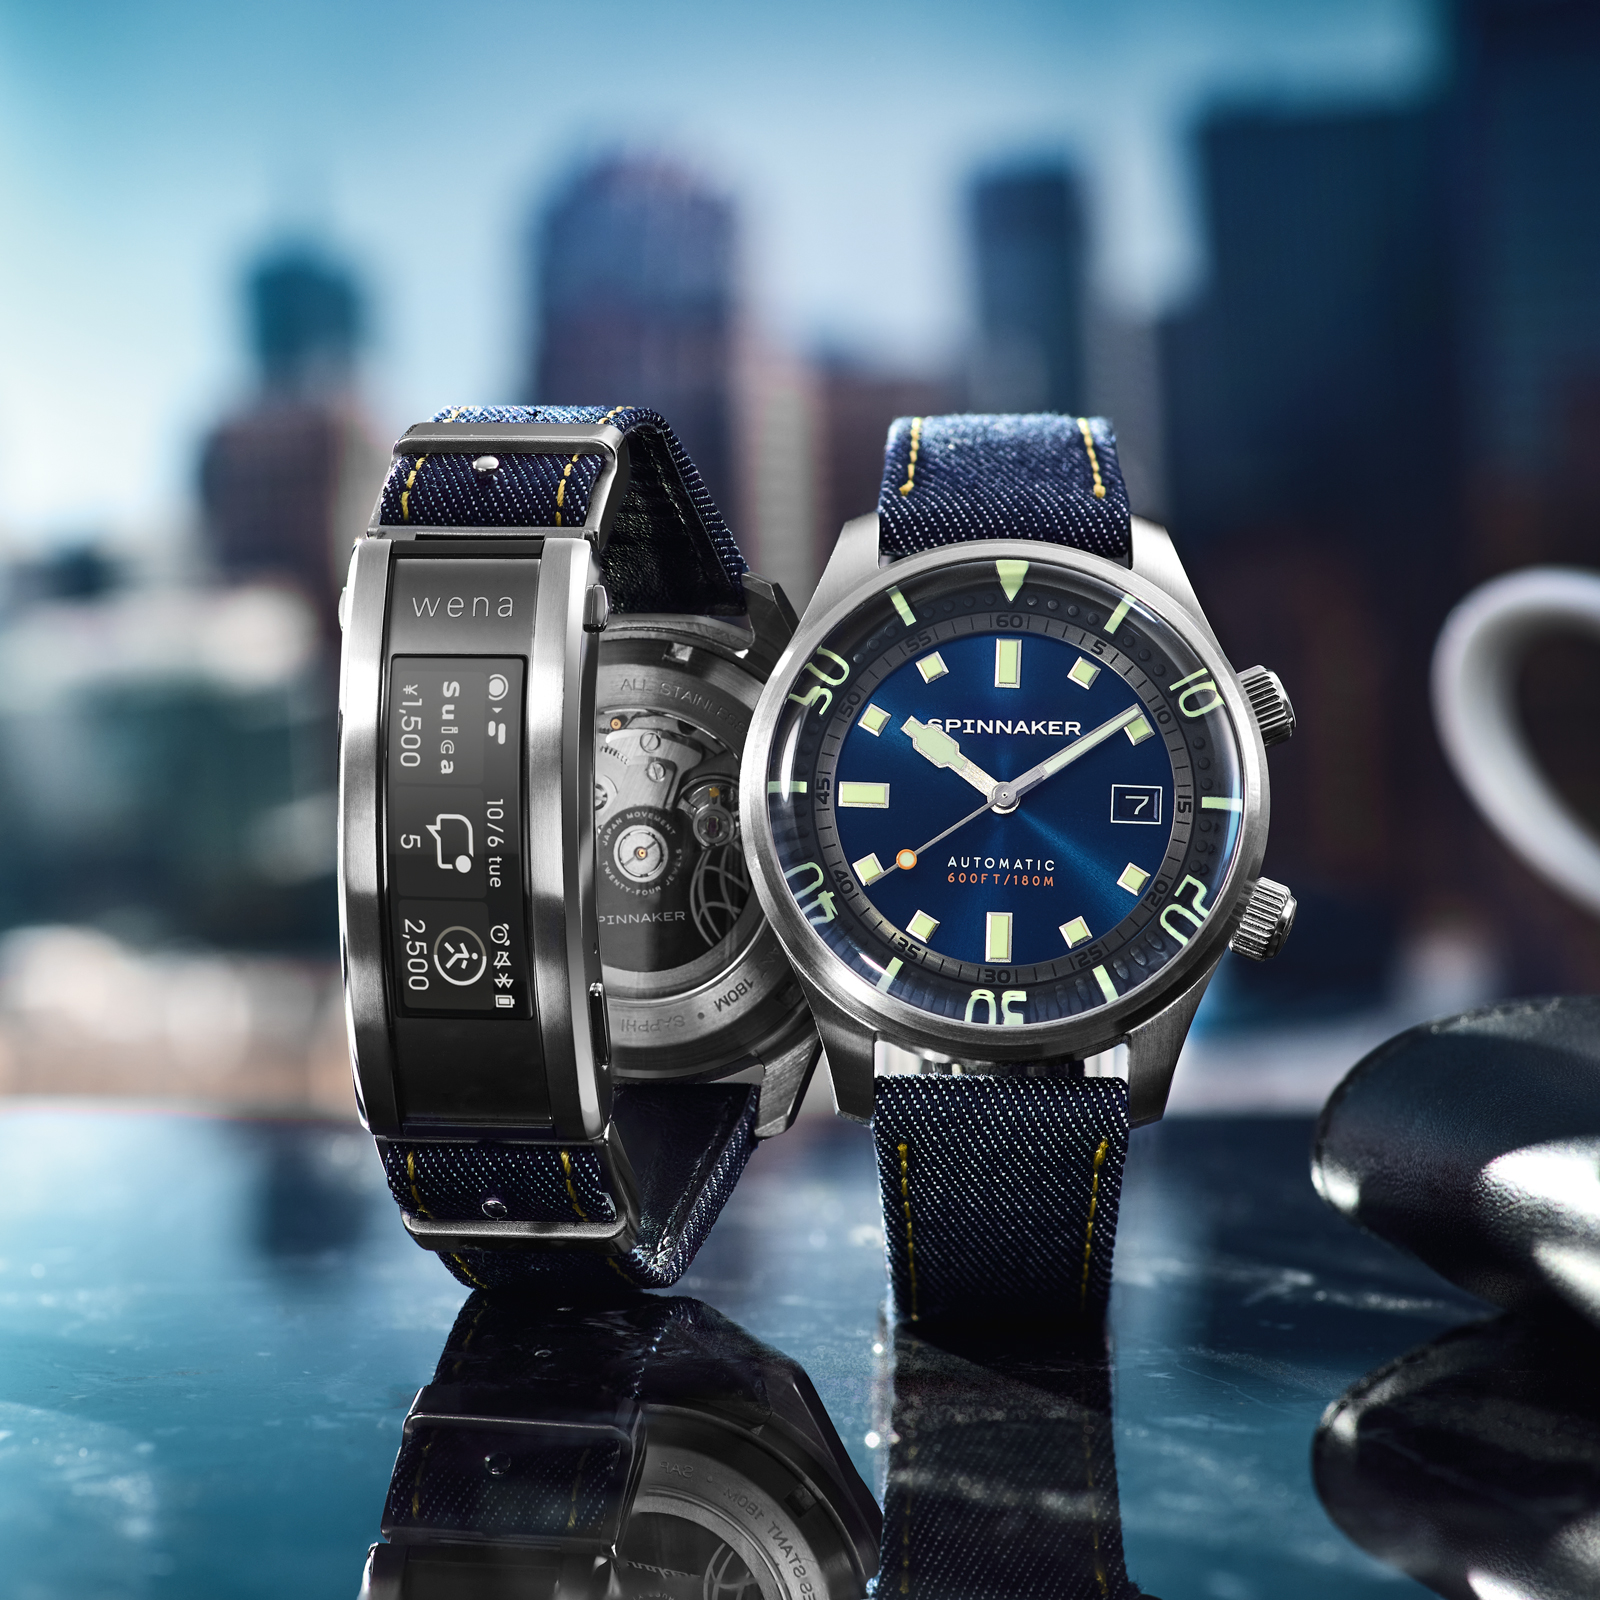 イタリア発の腕時計「スピニカー」とソニーのスマートウォッチ「wena 3